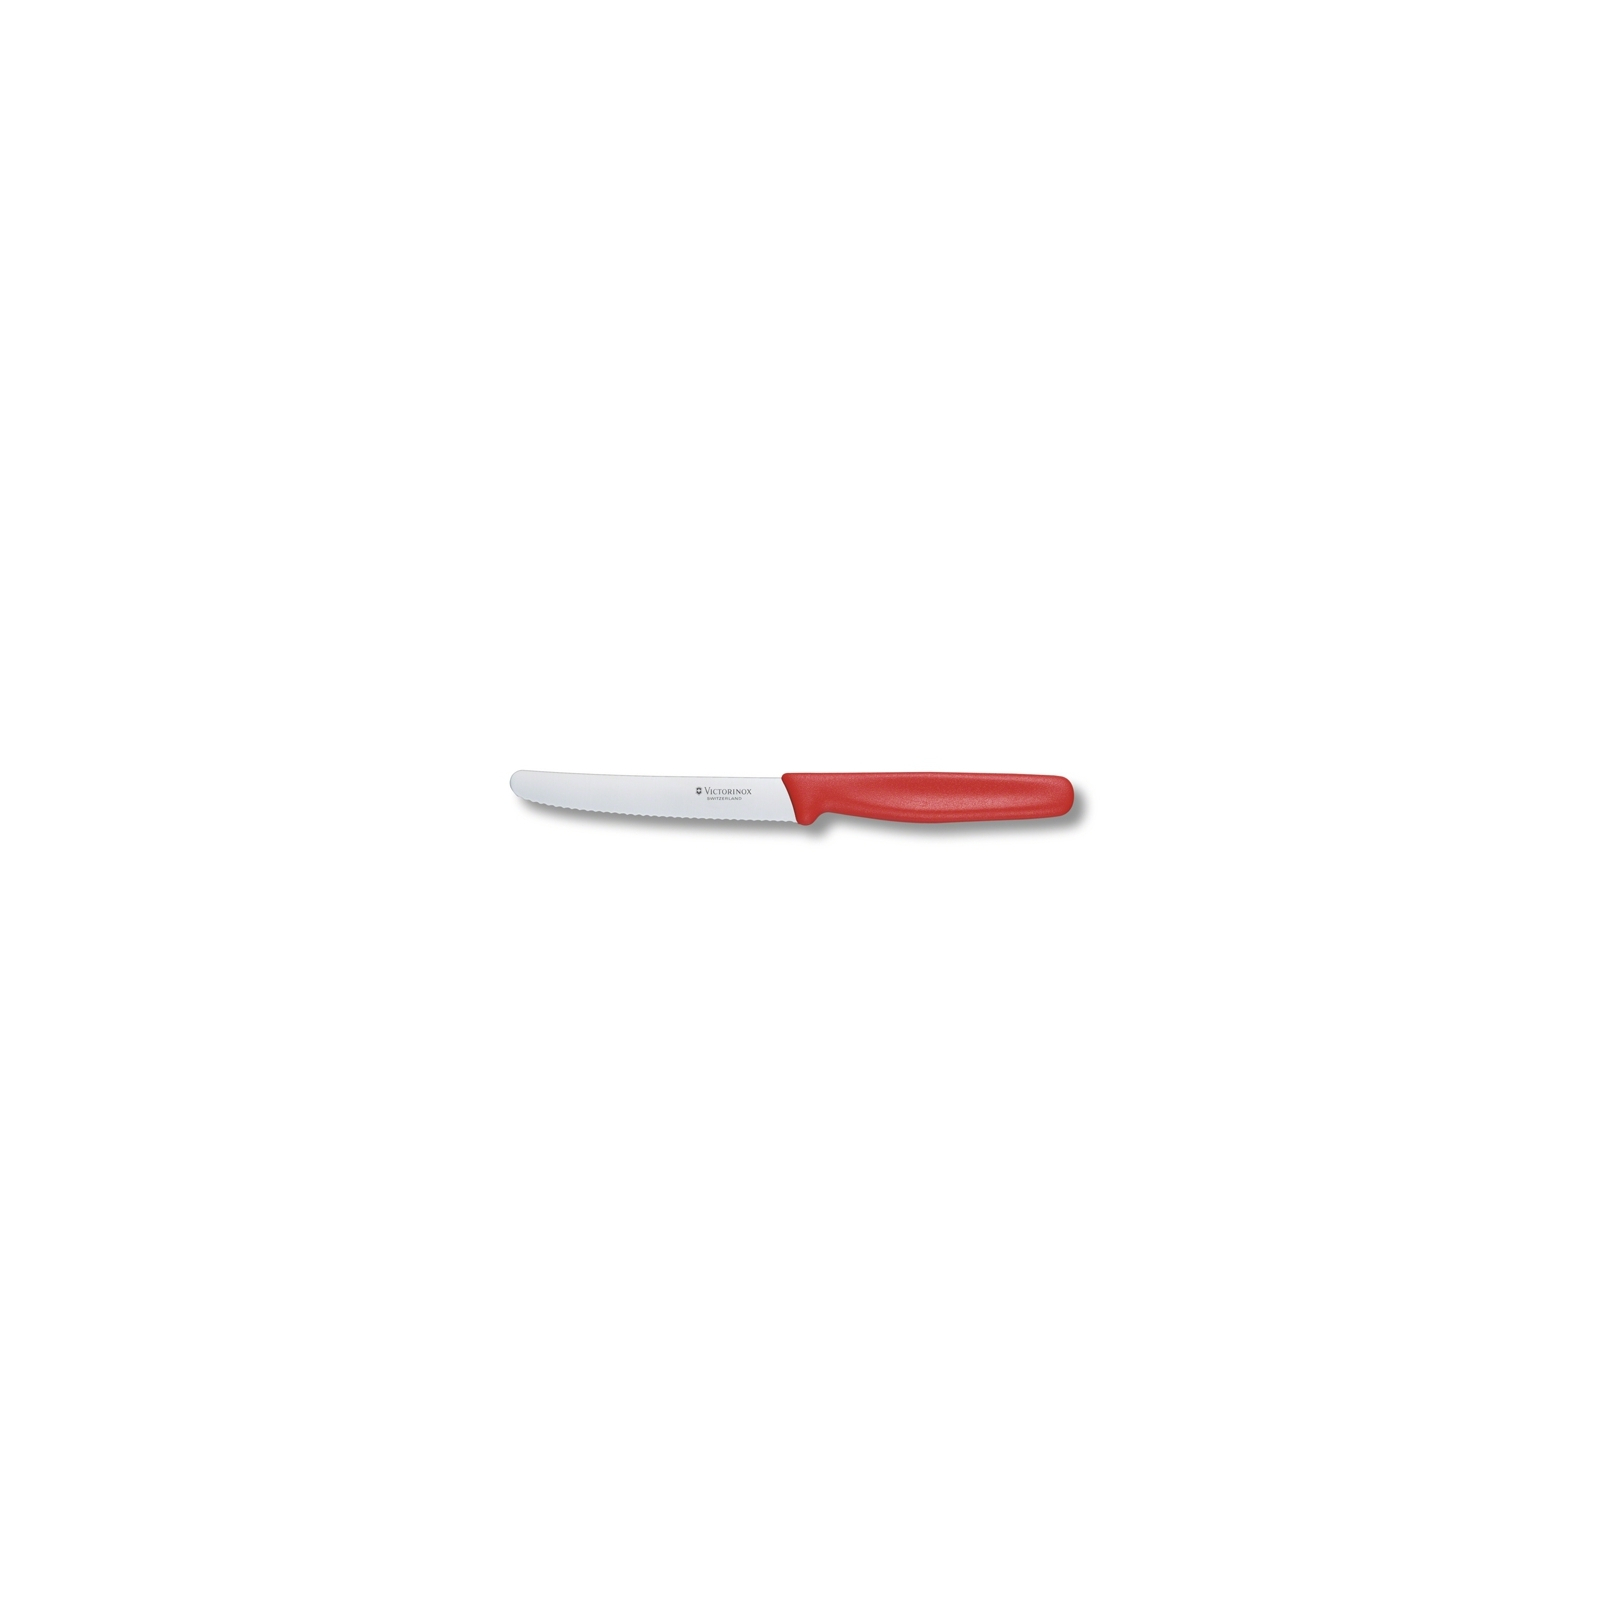 Кухонный нож Victorinox Standart для овощей 11 см, с волнистым лезвием, красный (5.0831)